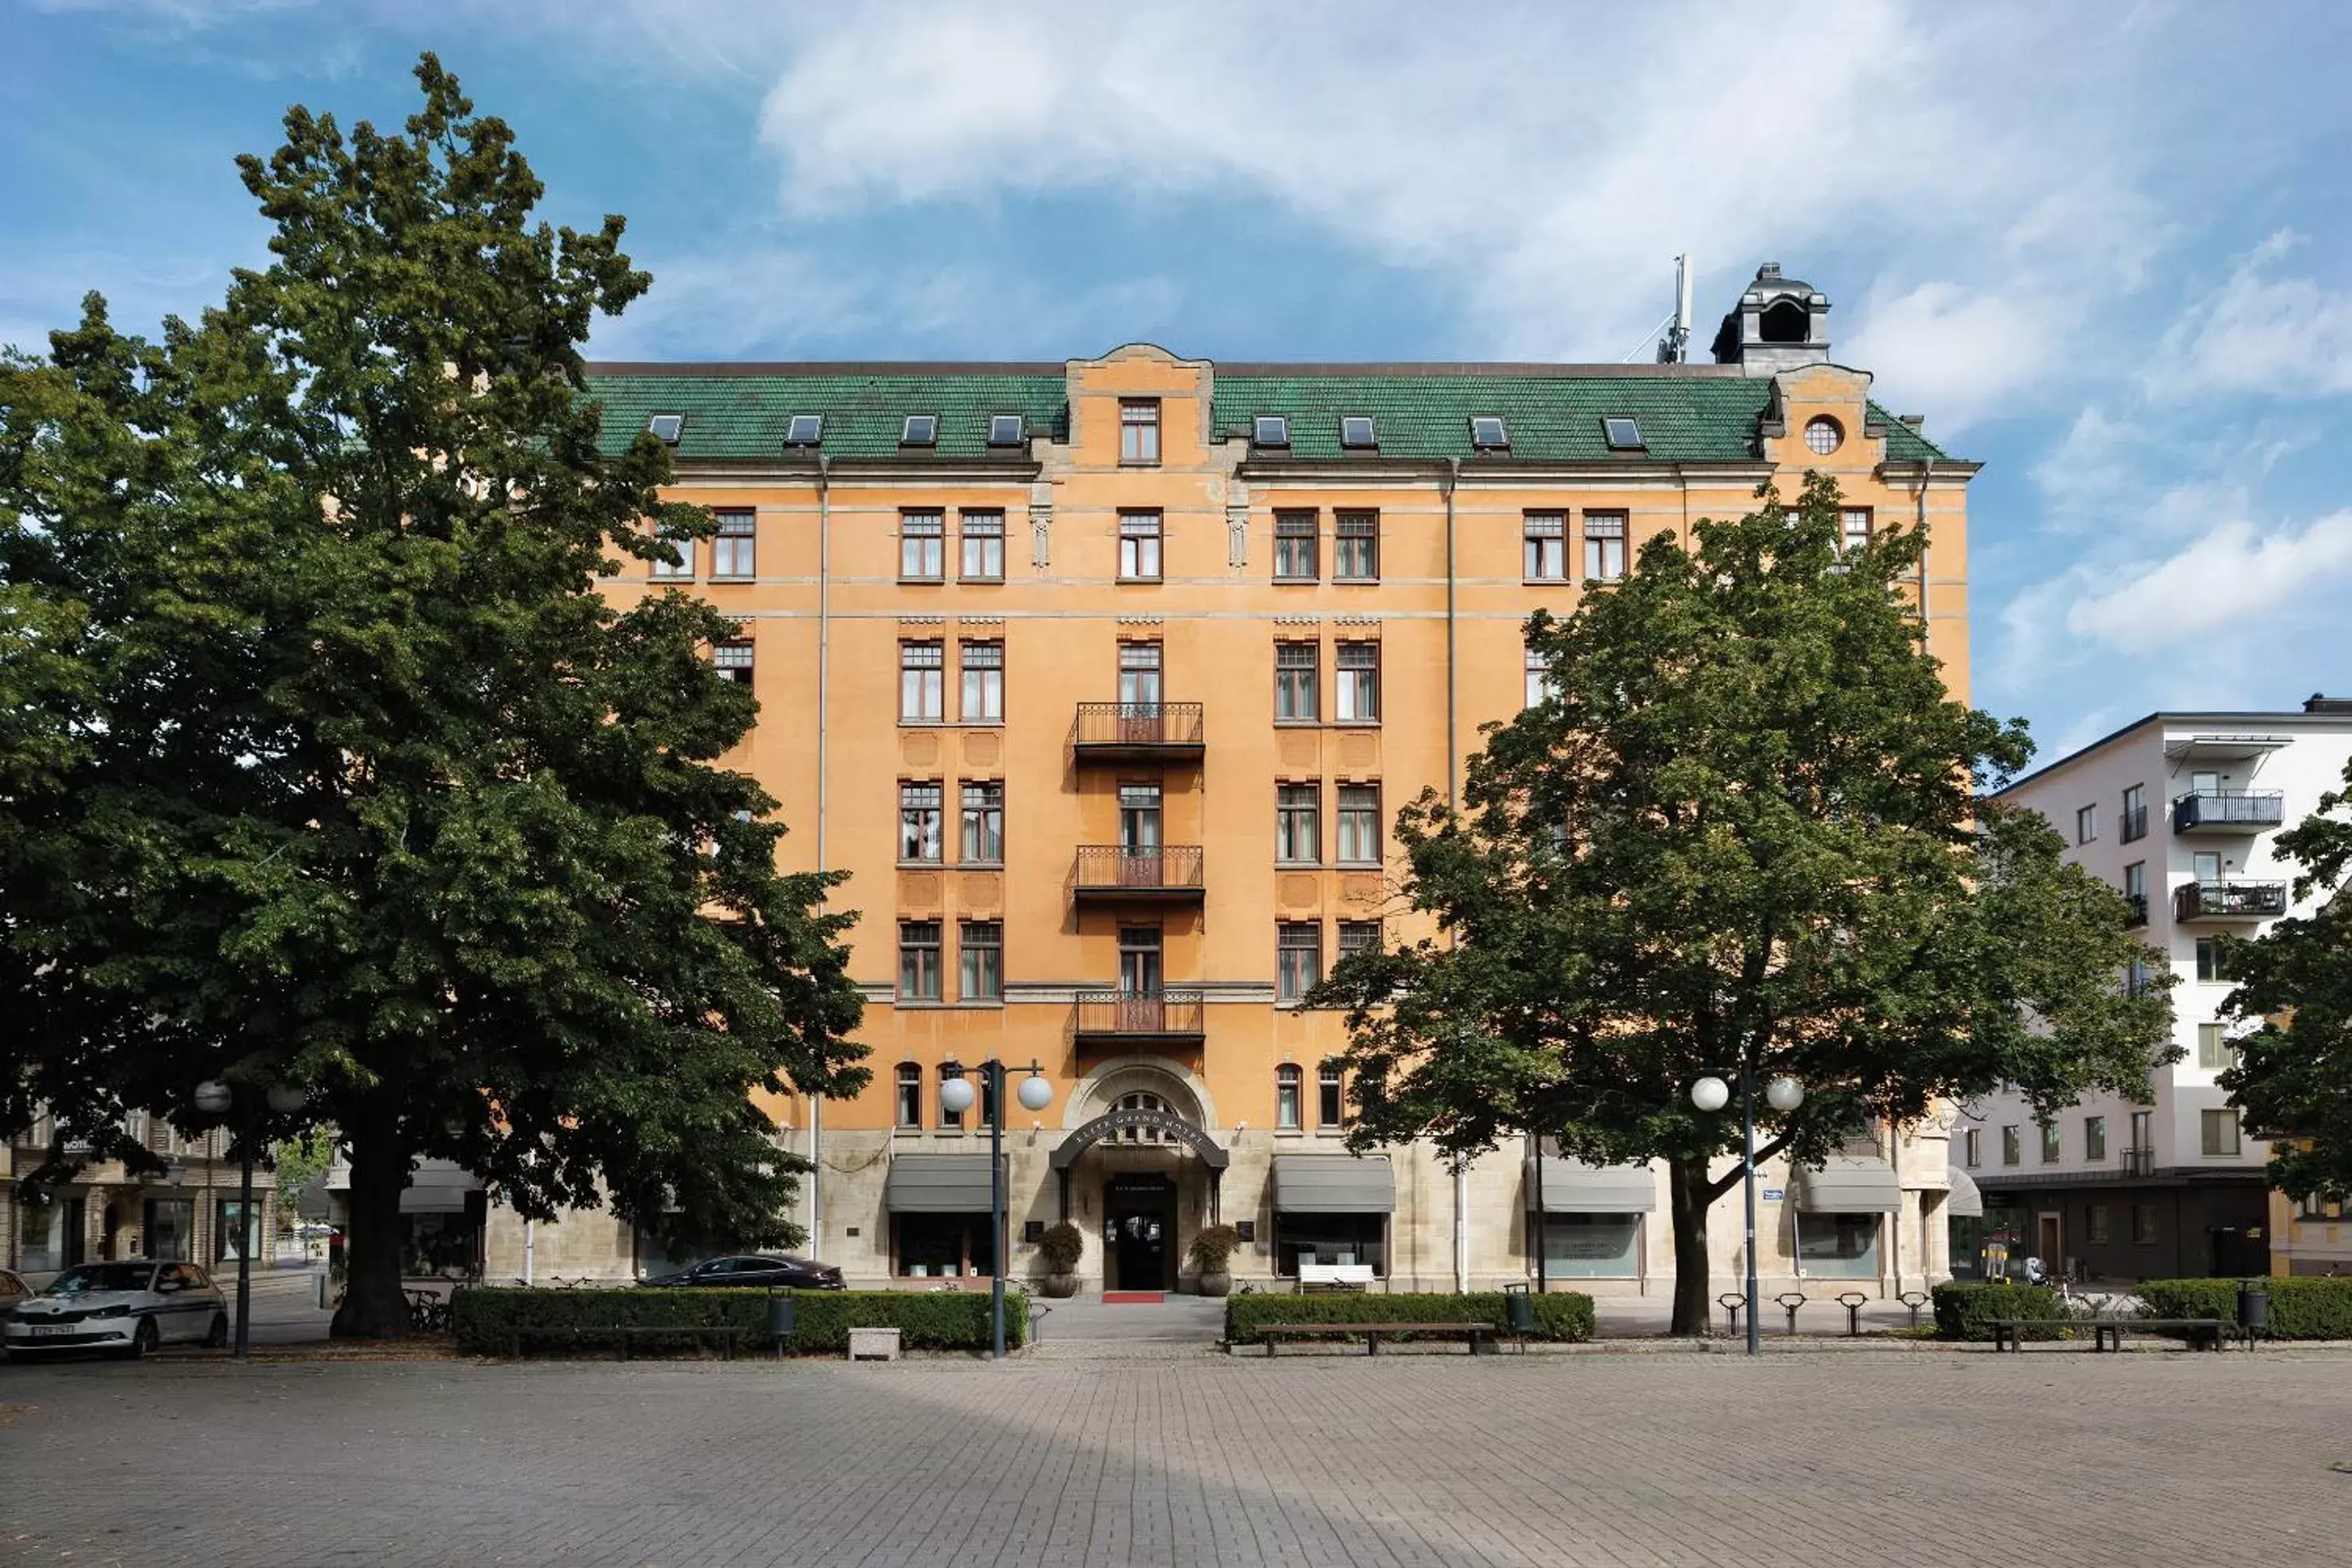 Property Building in Elite Grand Hotel Norrköping